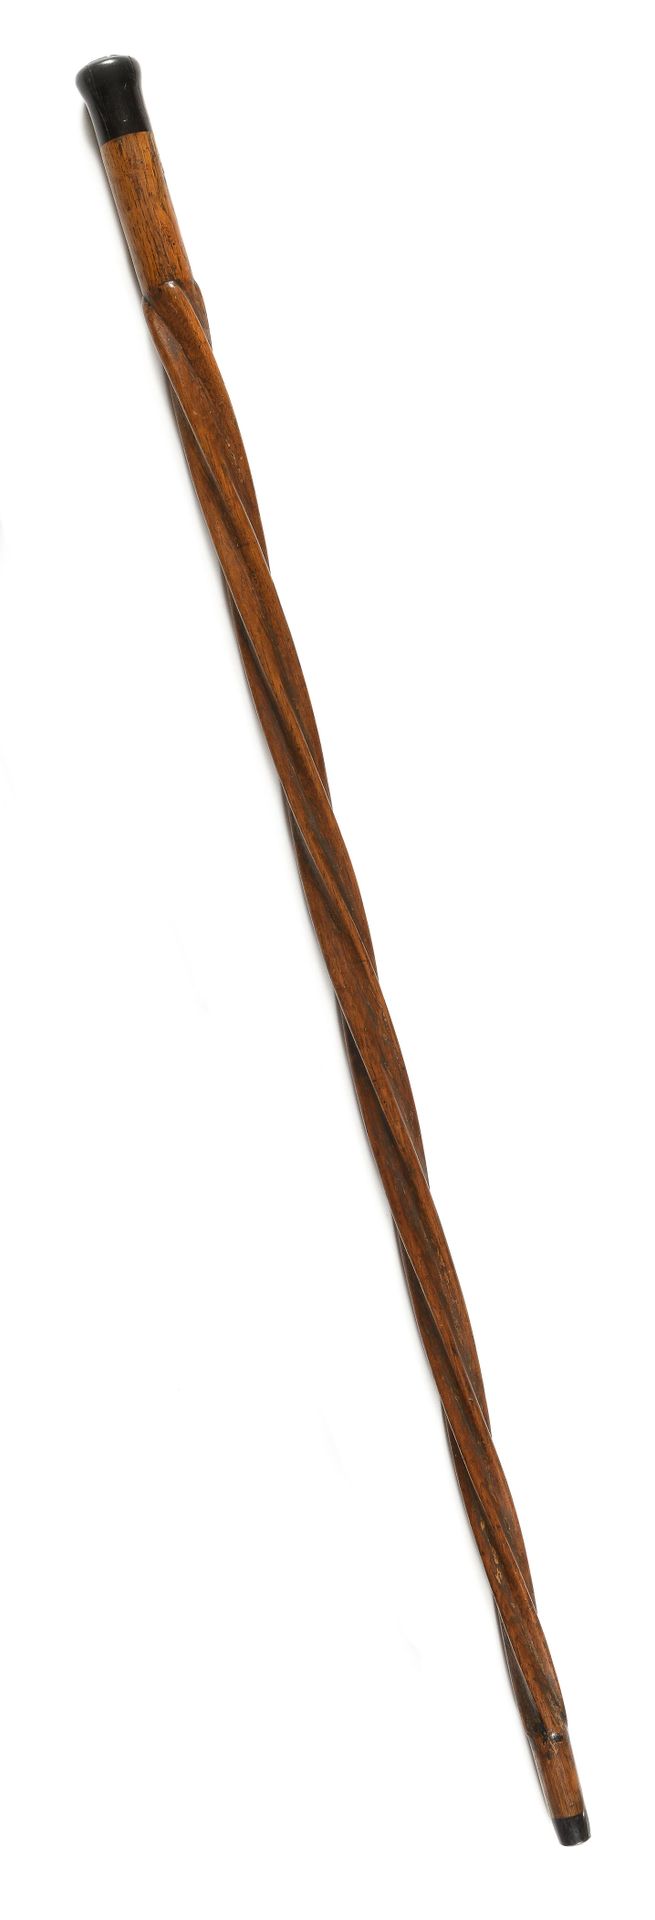 Null *尖锐的匕首棒

发黑的木质鞍座

长的发黑的木轴，带角的顶端

长：104.5厘米